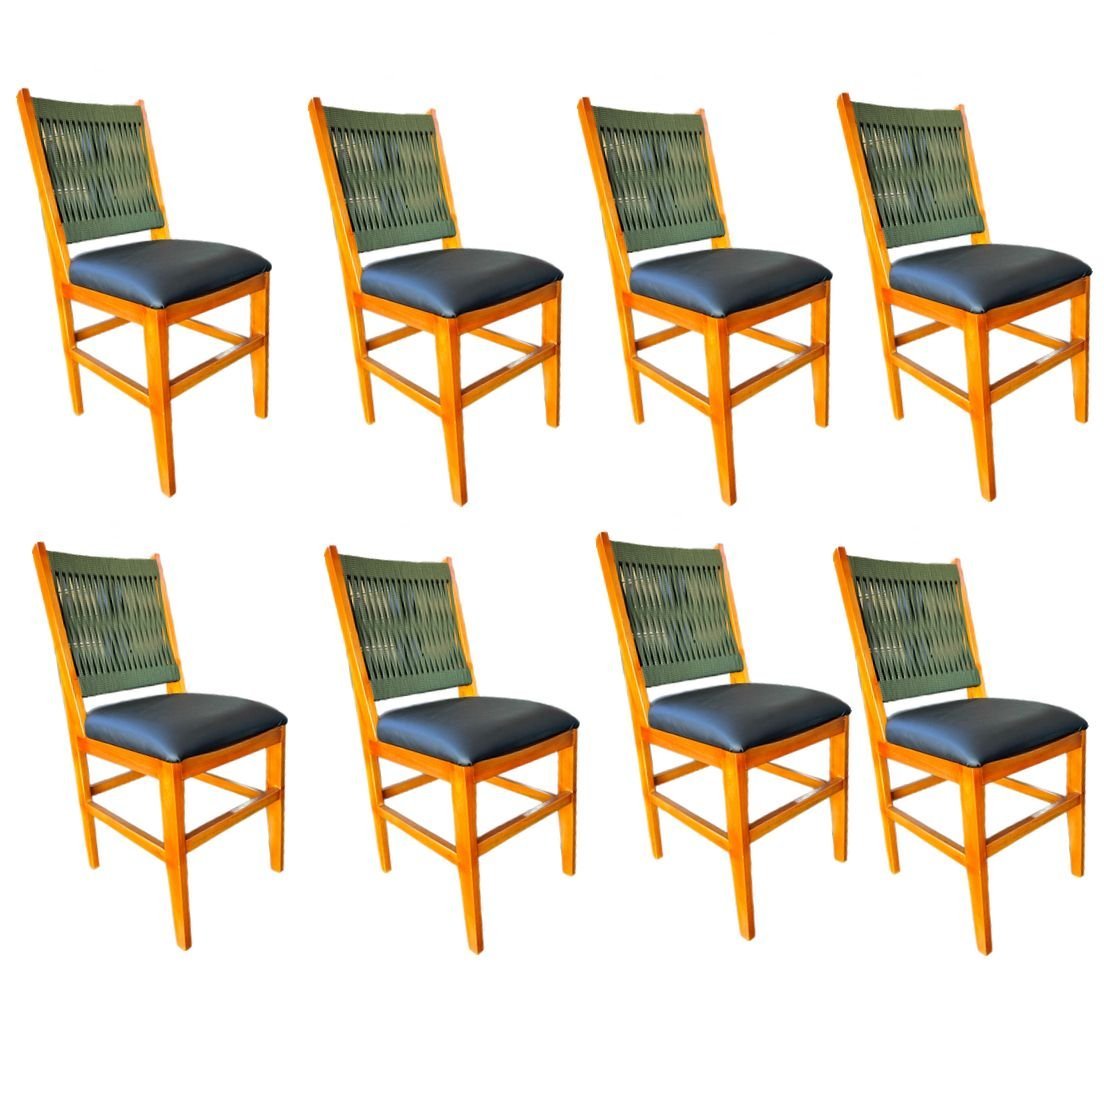 Kit 8 Cadeiras Ana Hickman com Corda Náutica e Estofado